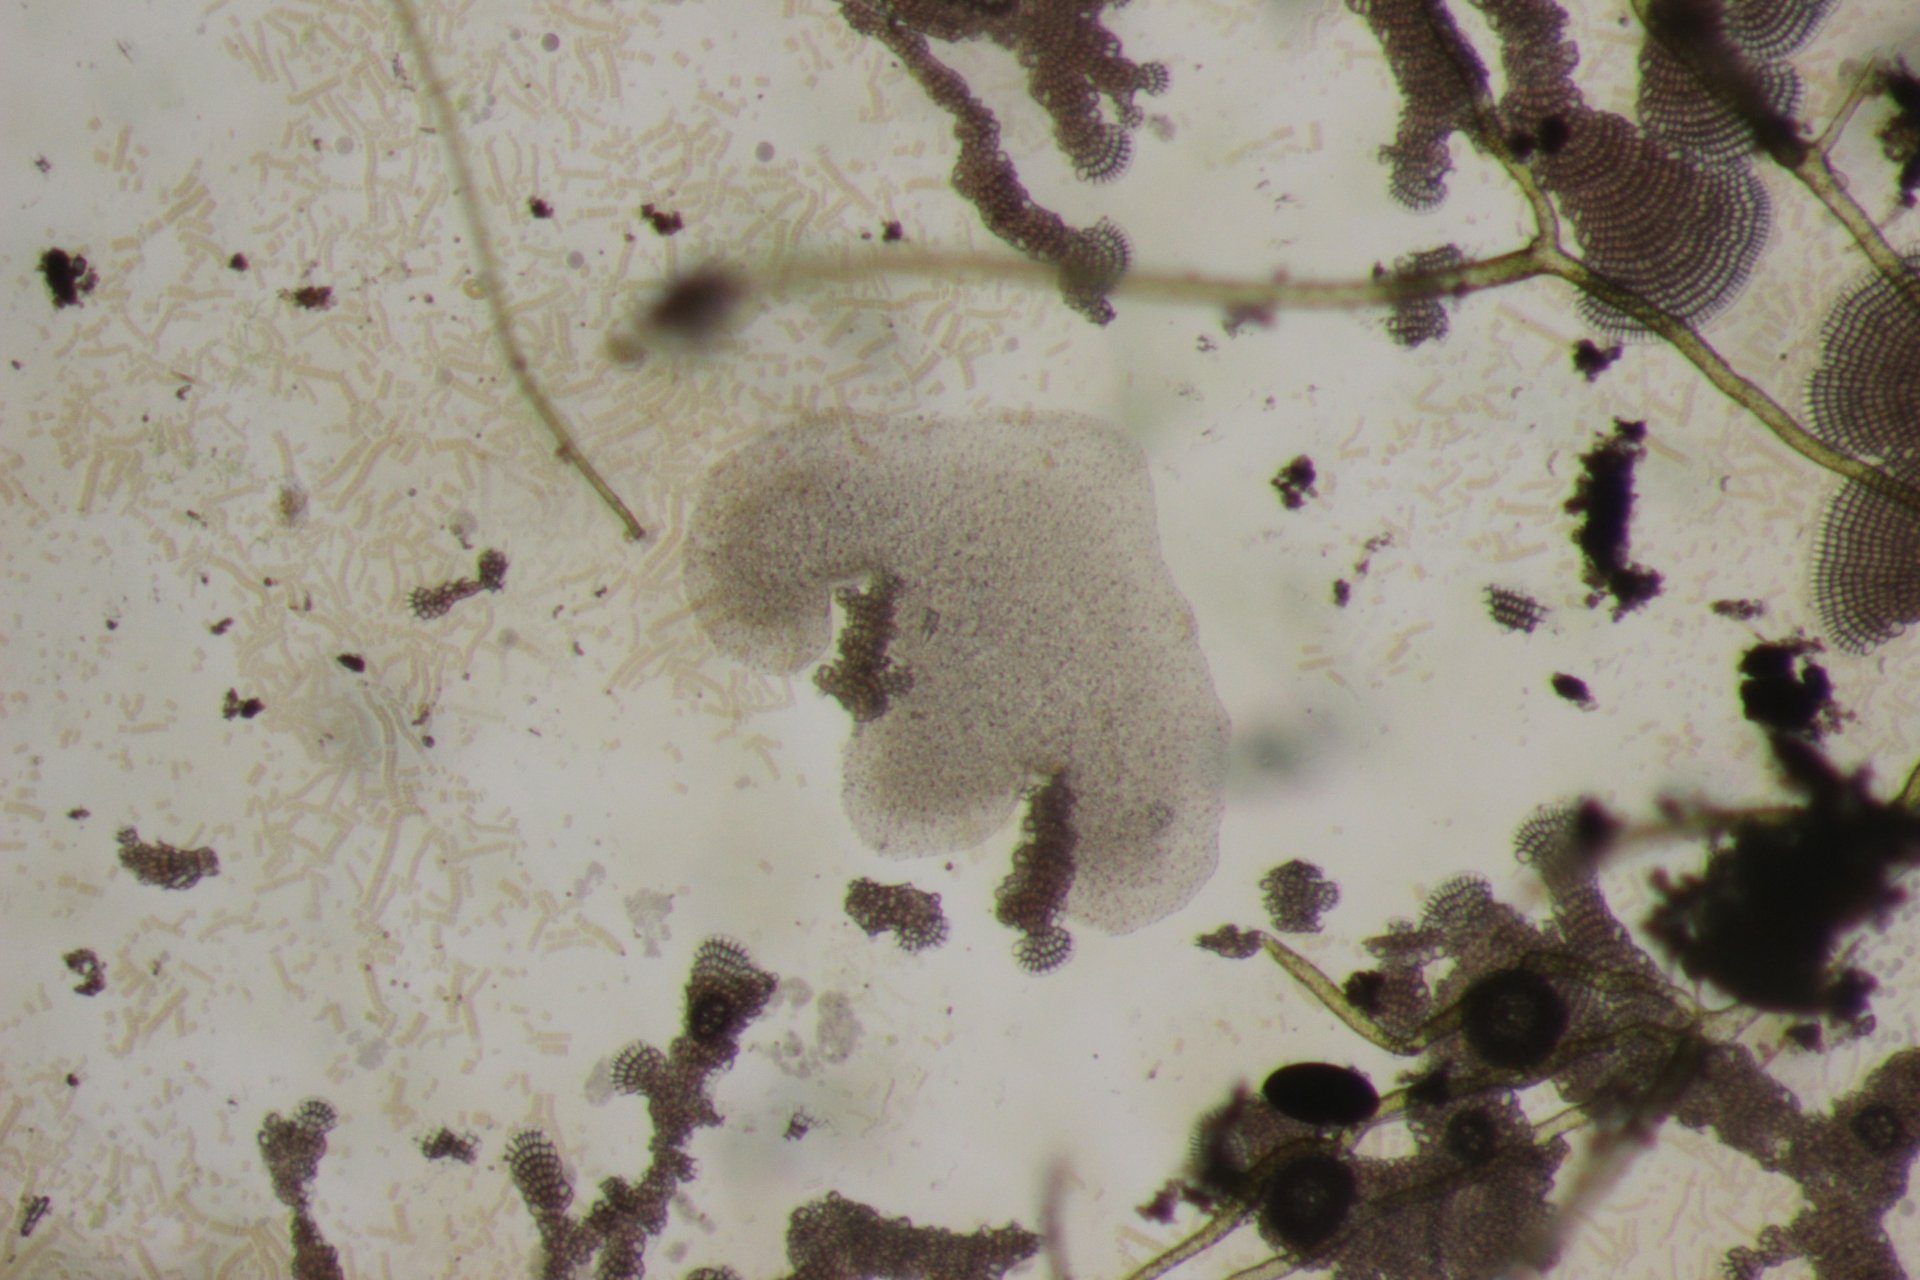 Trichoplax umgeben von Bakterien und Algen. (© Michael Hadfield / Universität Hawaii)